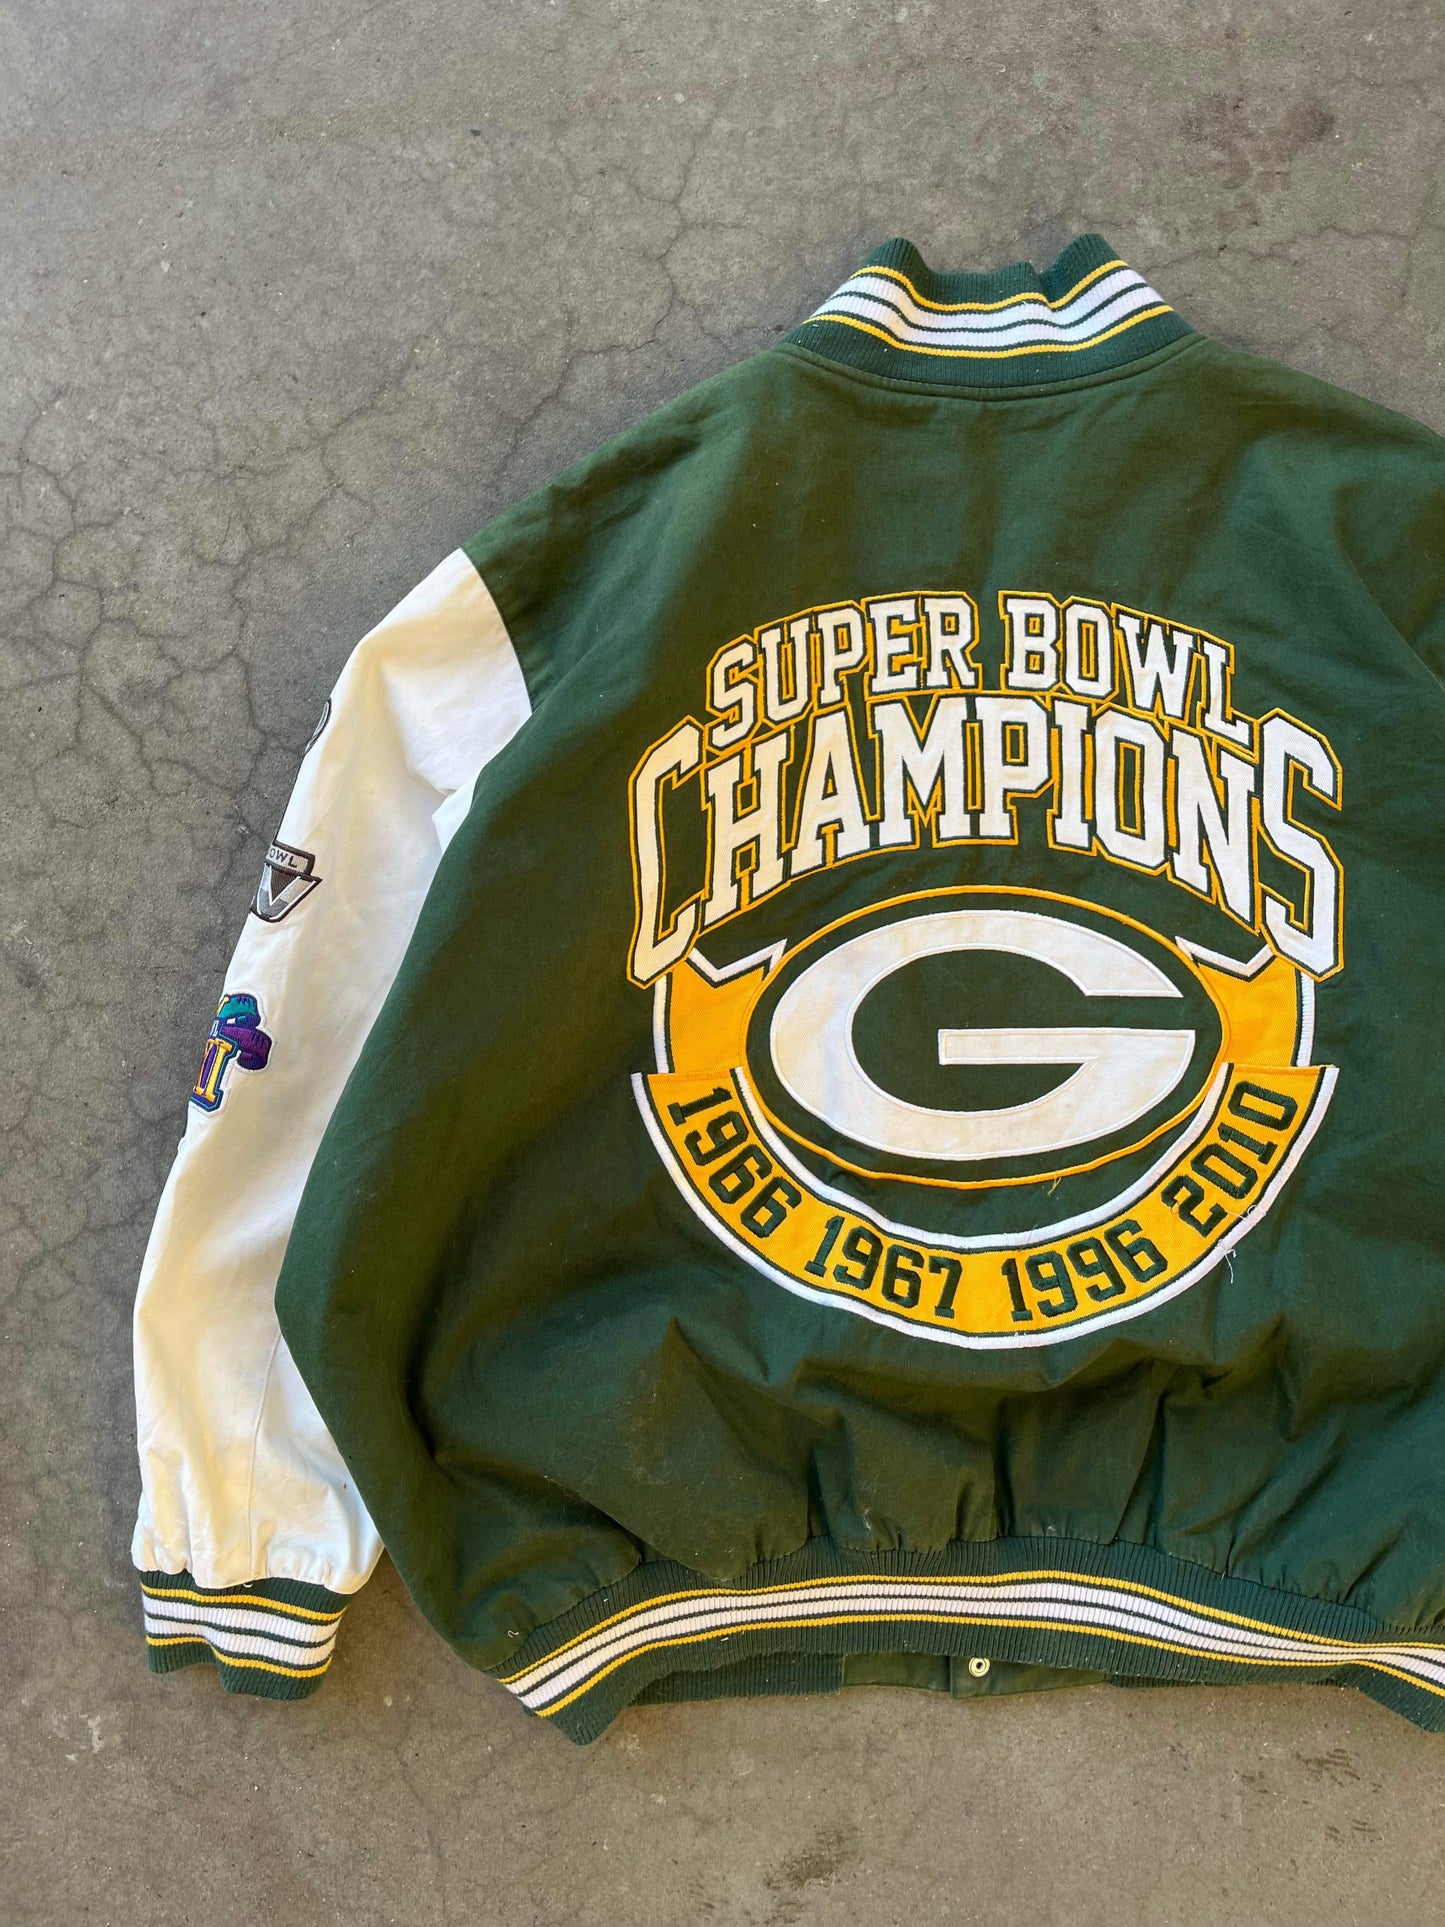 (XL/2X) NFL Green Bay Packer Varsity Jacket